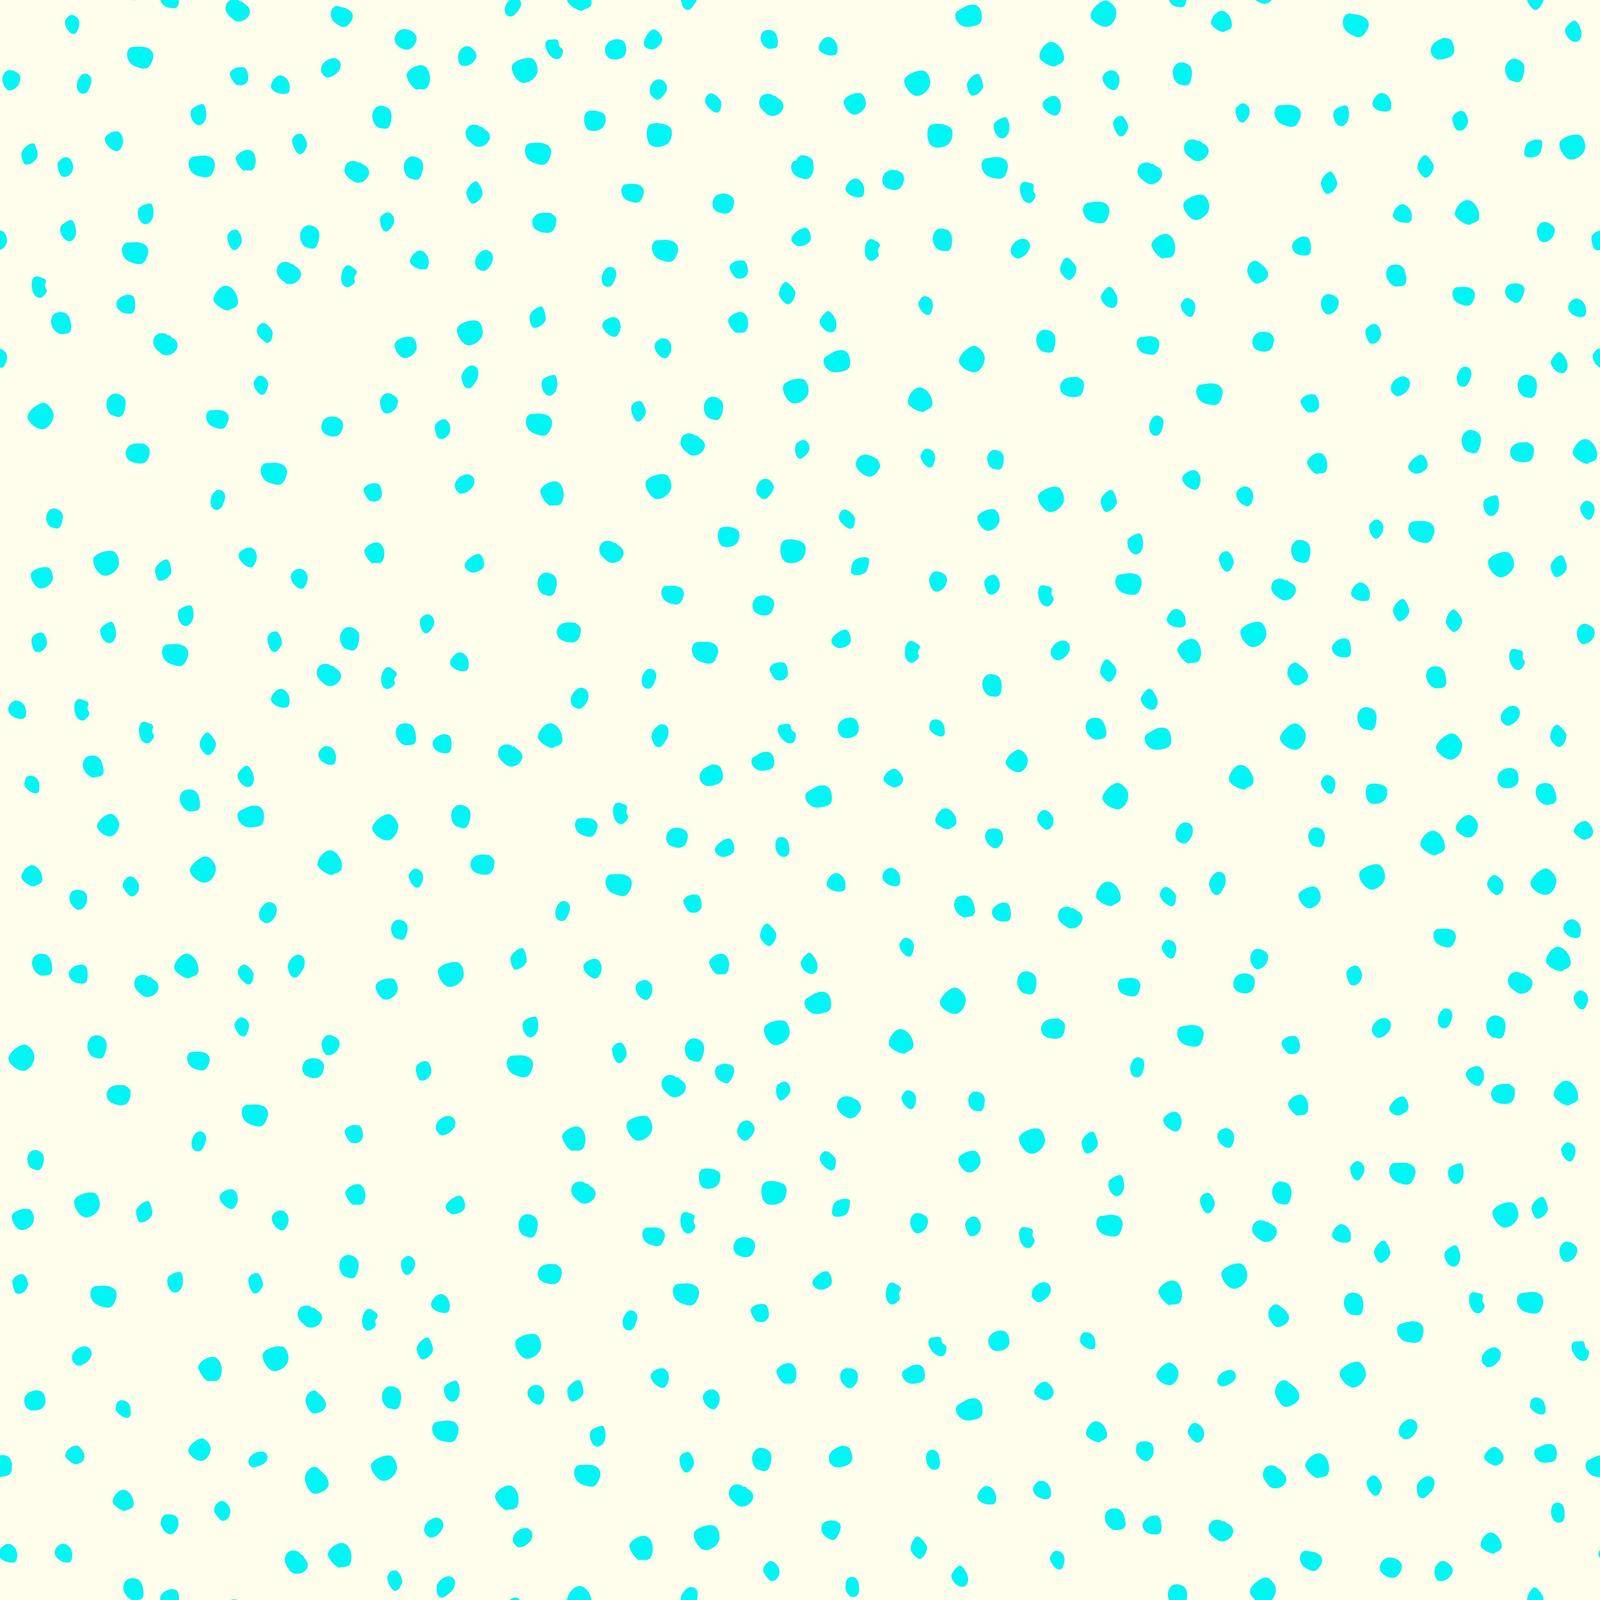 Polka dot background by Valeriya_Dor